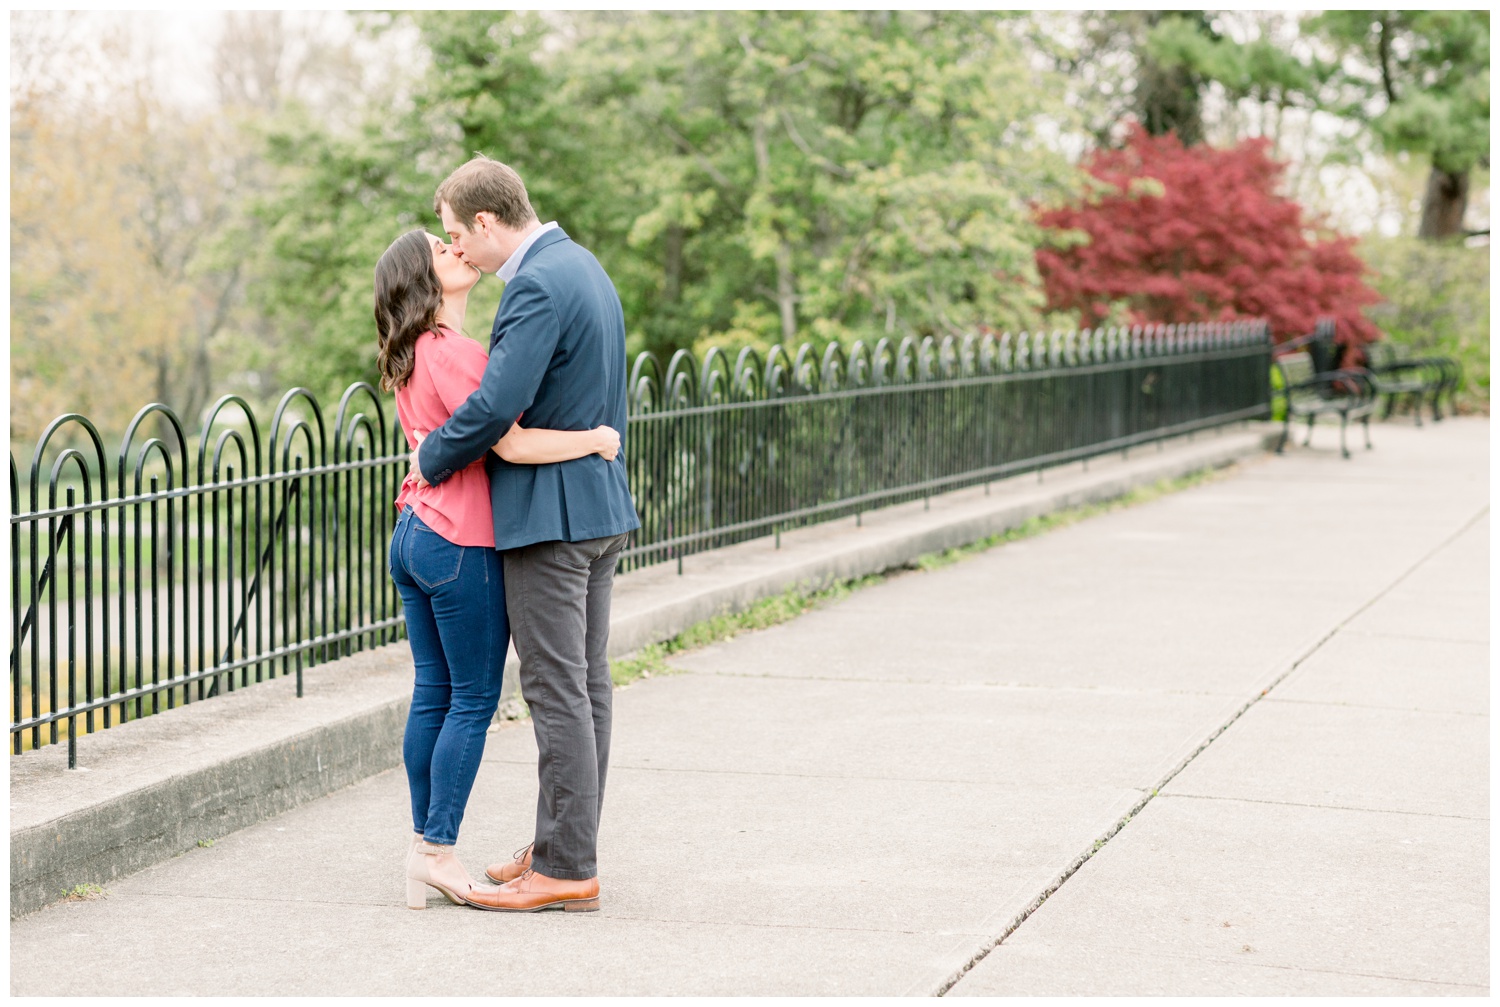 Ault Park Engaged Couple Kissing - Cincinnati Ohio